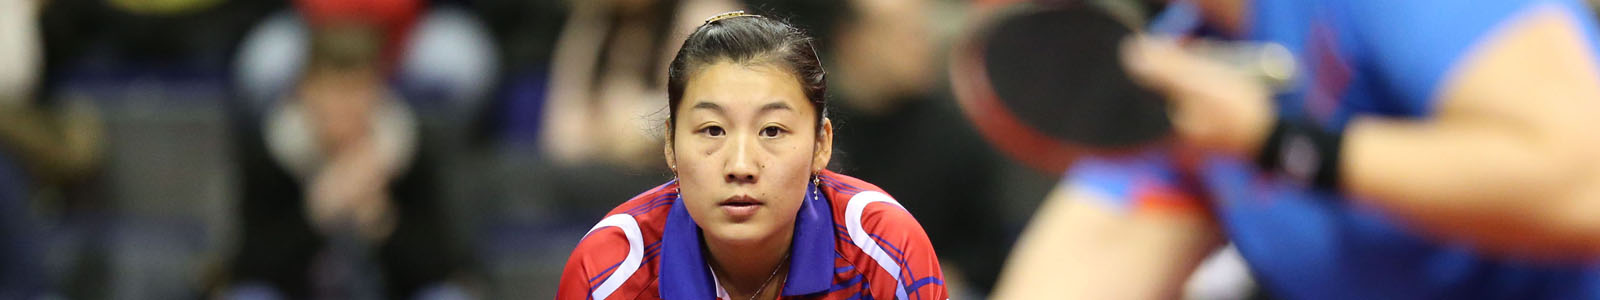 Li Xue qualification jo